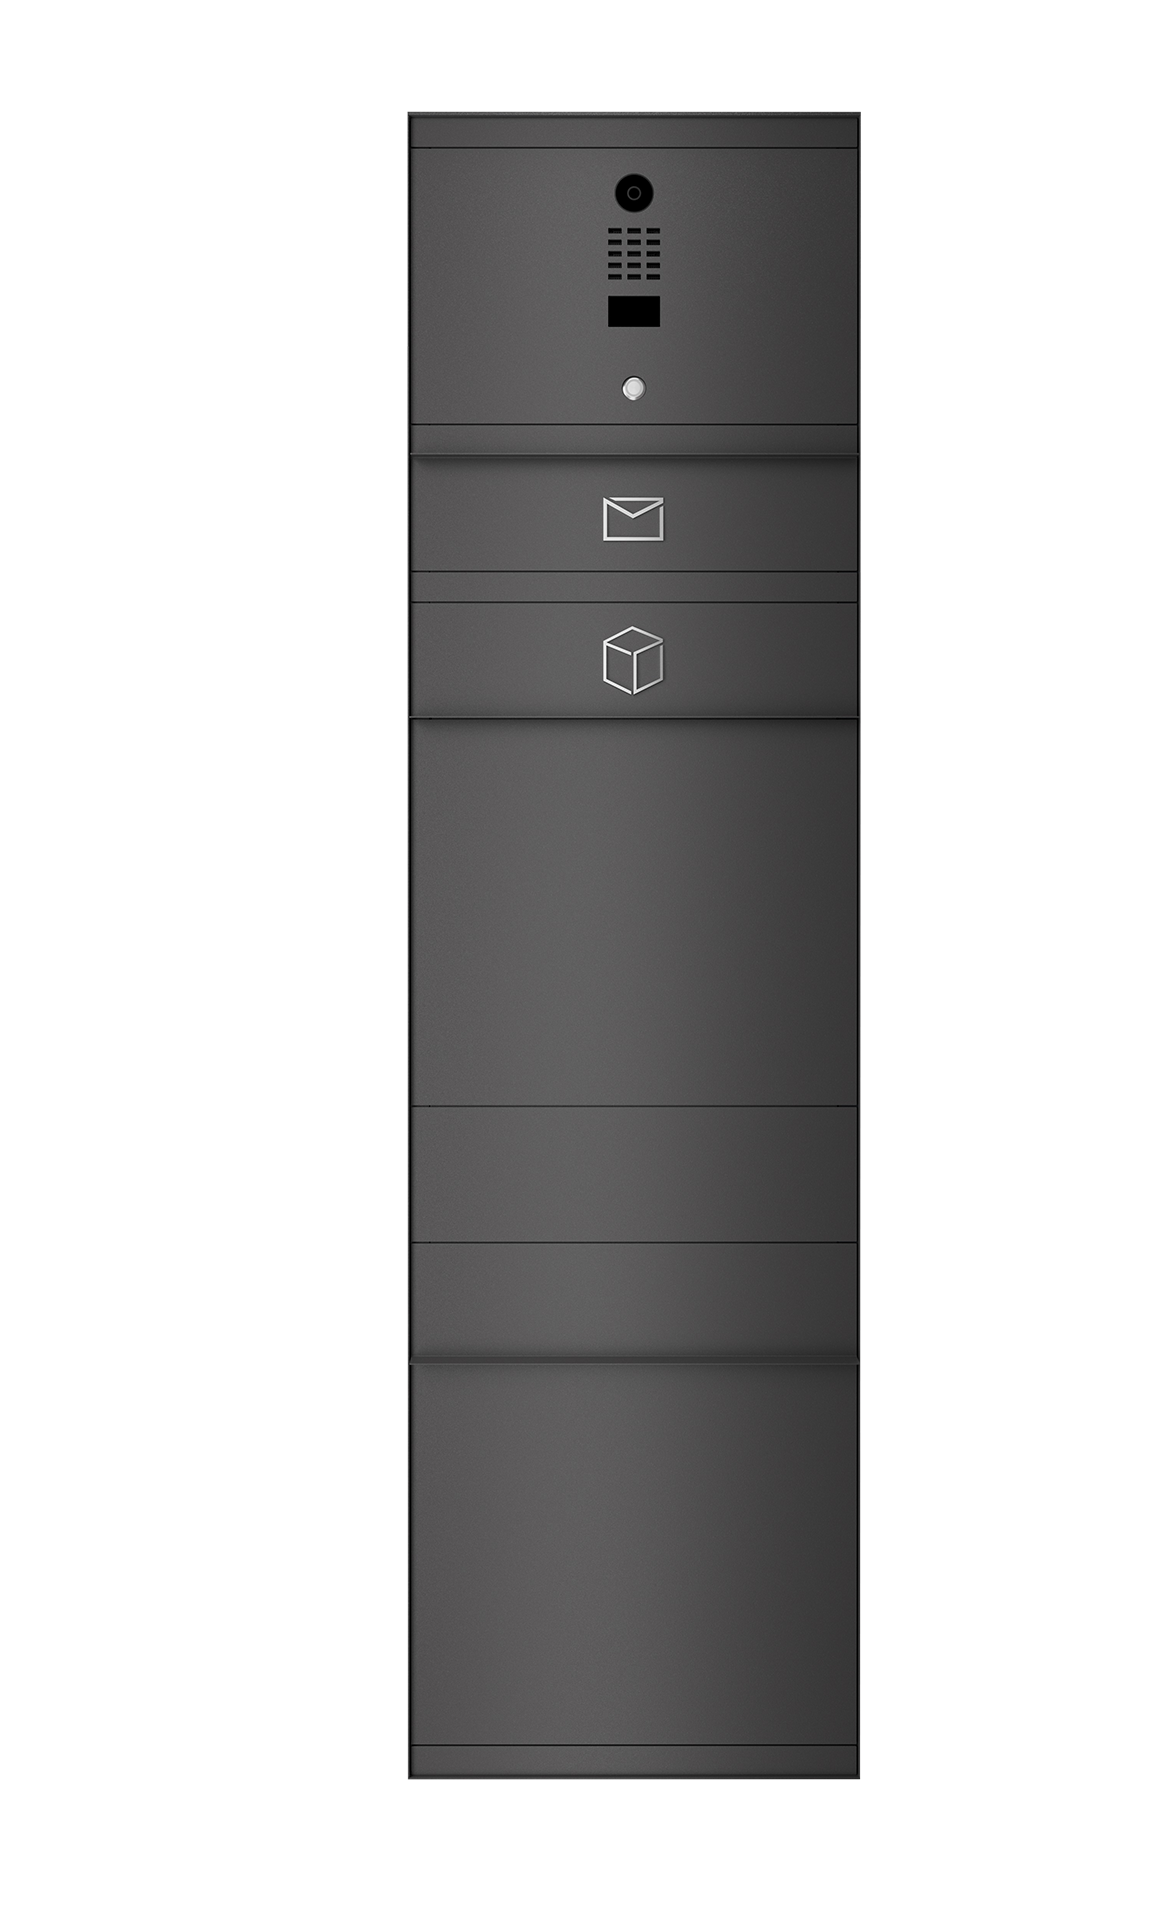 Paketbox mit DoorBird-Videotechnik DB703